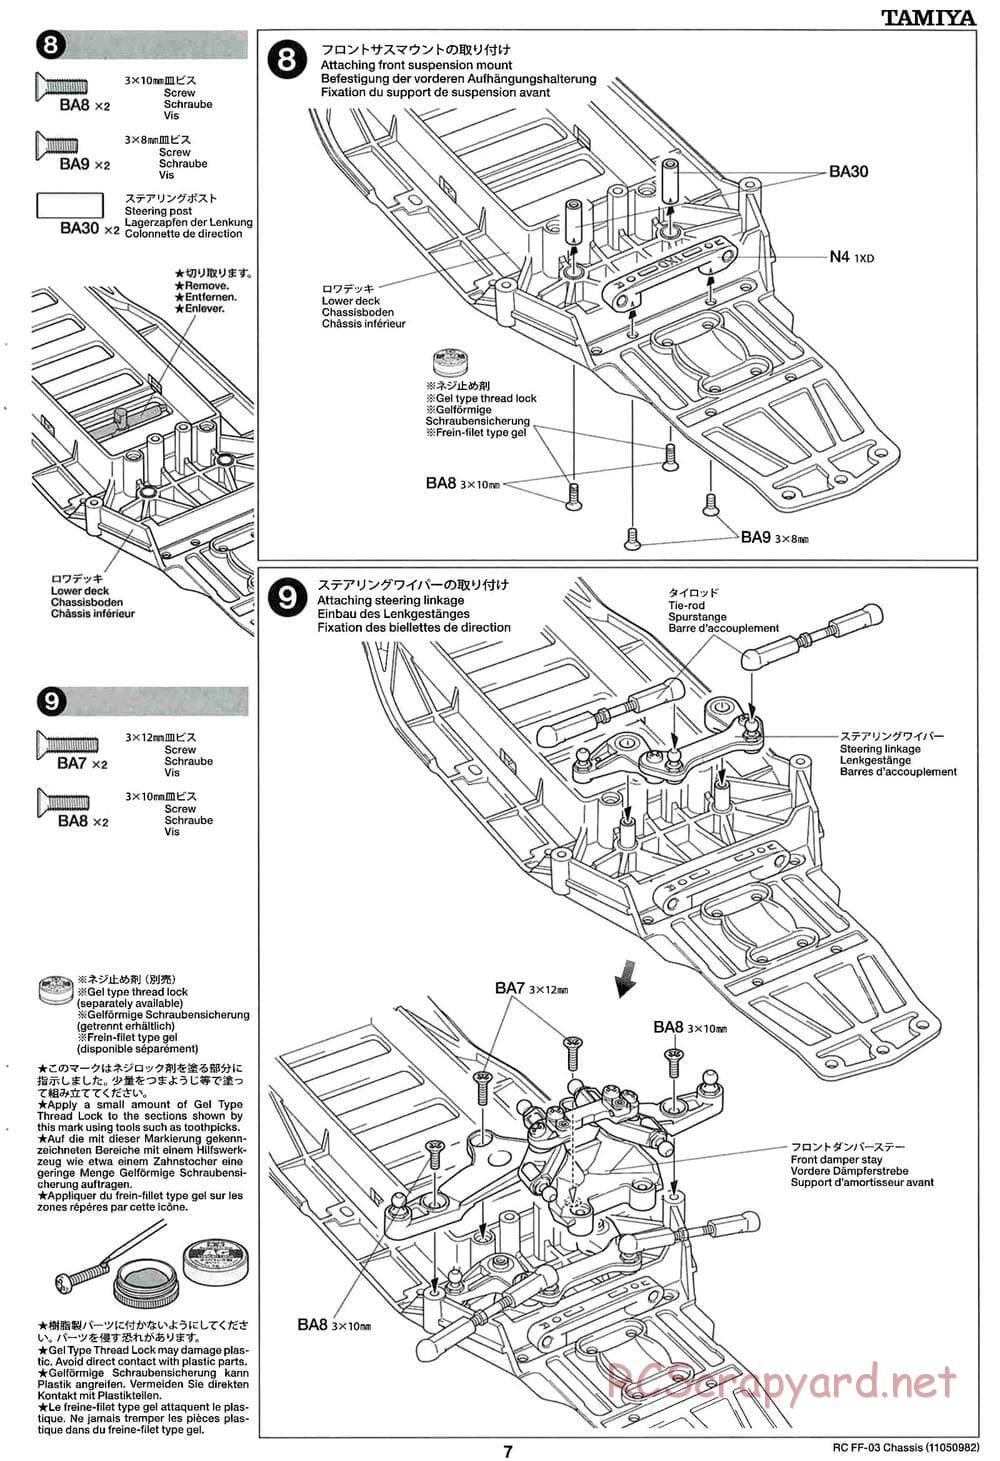 Tamiya - Honda Accord Aero Custom - FF-03 Chassis - Manual - Page 7